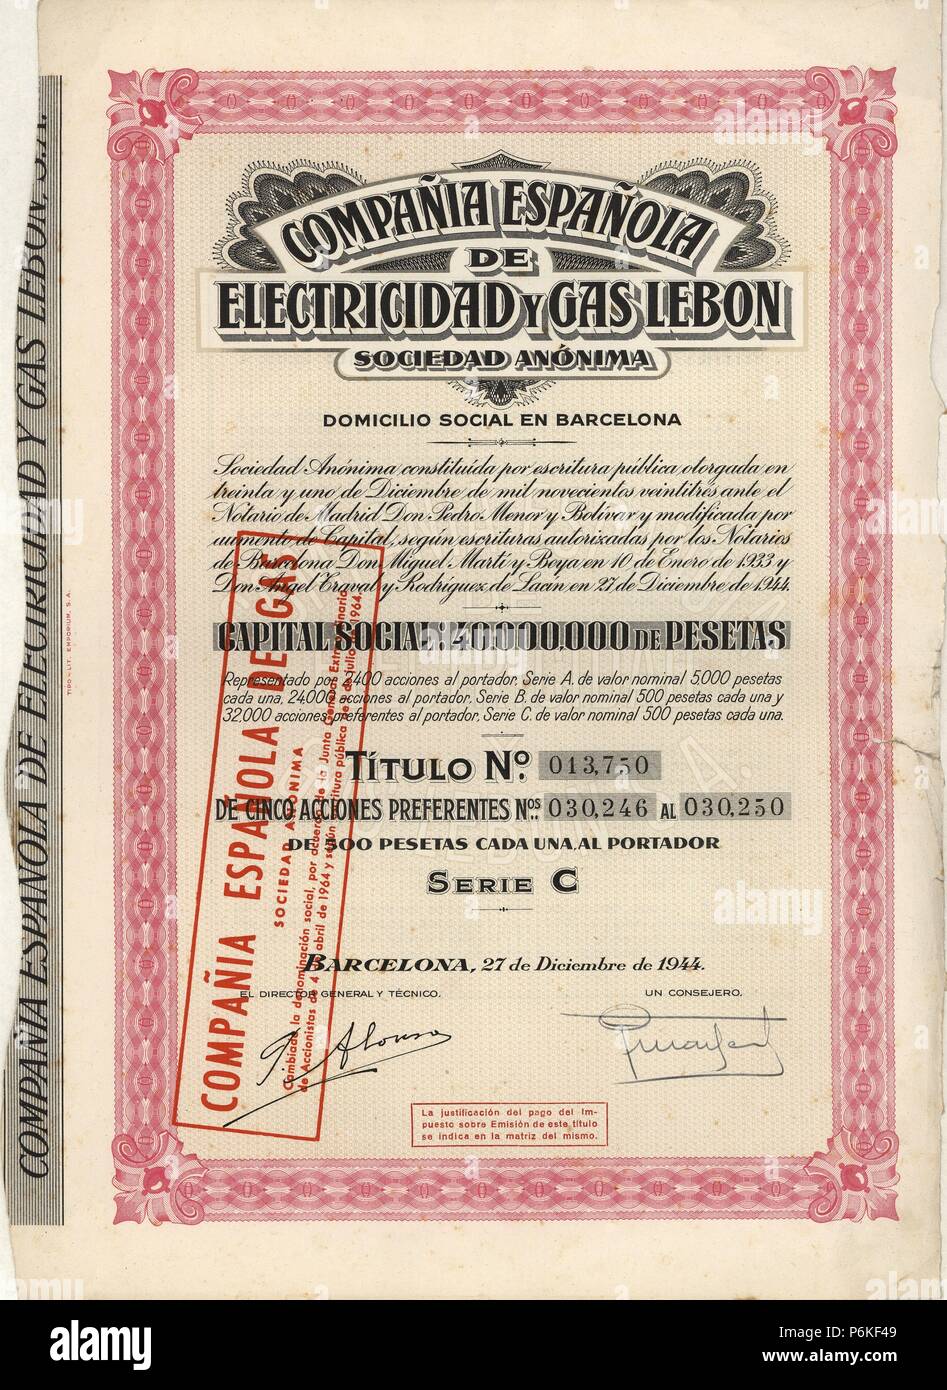 Título de cinco acciones prederentes de 500 pesetas cada una, emitido por la Compañia Española de Electricidad y Gas Lebon S.A.. Barcelona, 27 de diciembre de 1944. Stock Photo